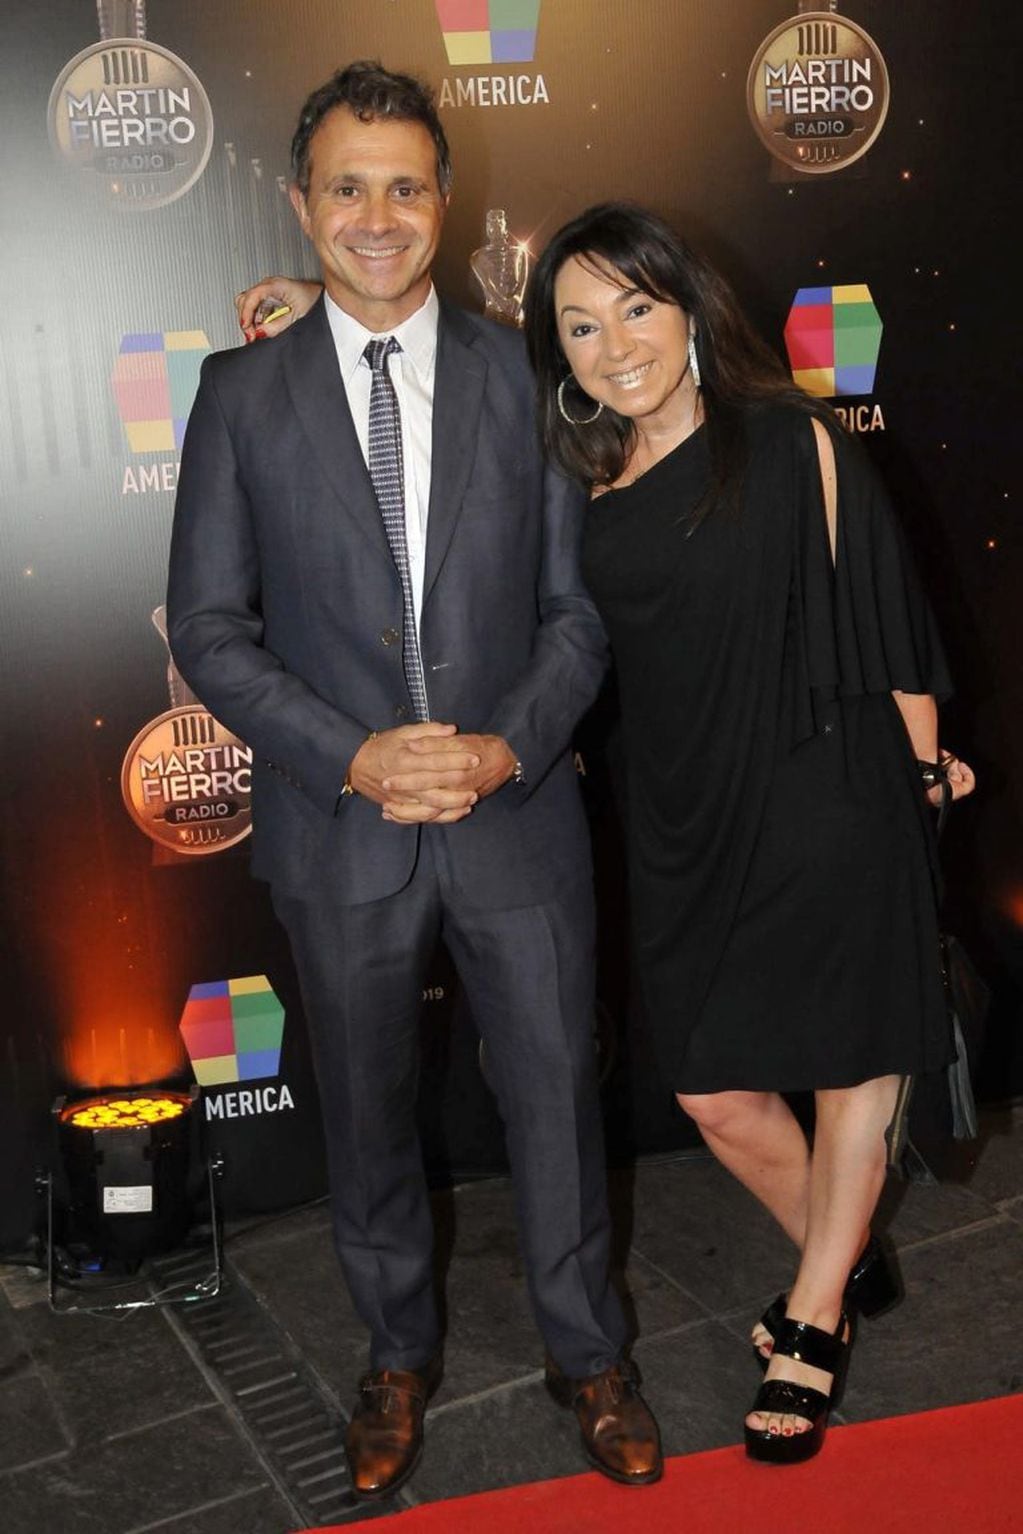 Sergio Lapegüe y su esposa Silvia- Martín Fierro de Radio 2019